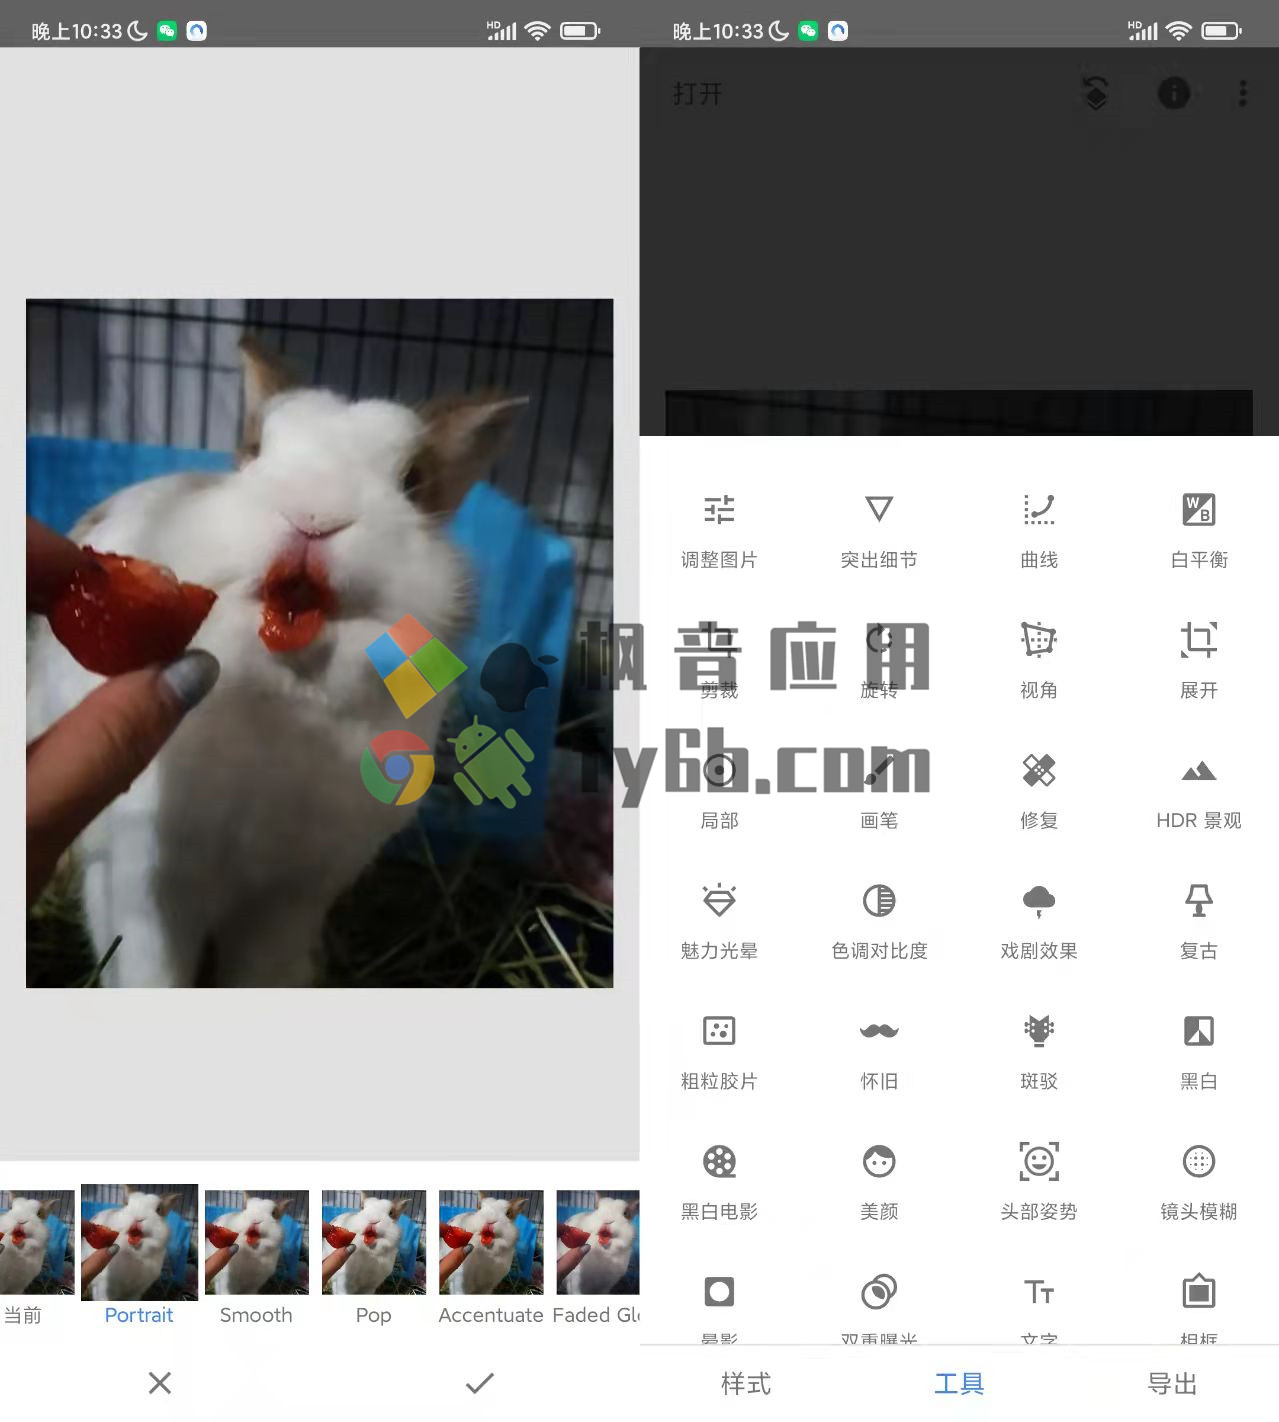 Android 手机端超强的图片编辑软件 — Snapseed v2.19